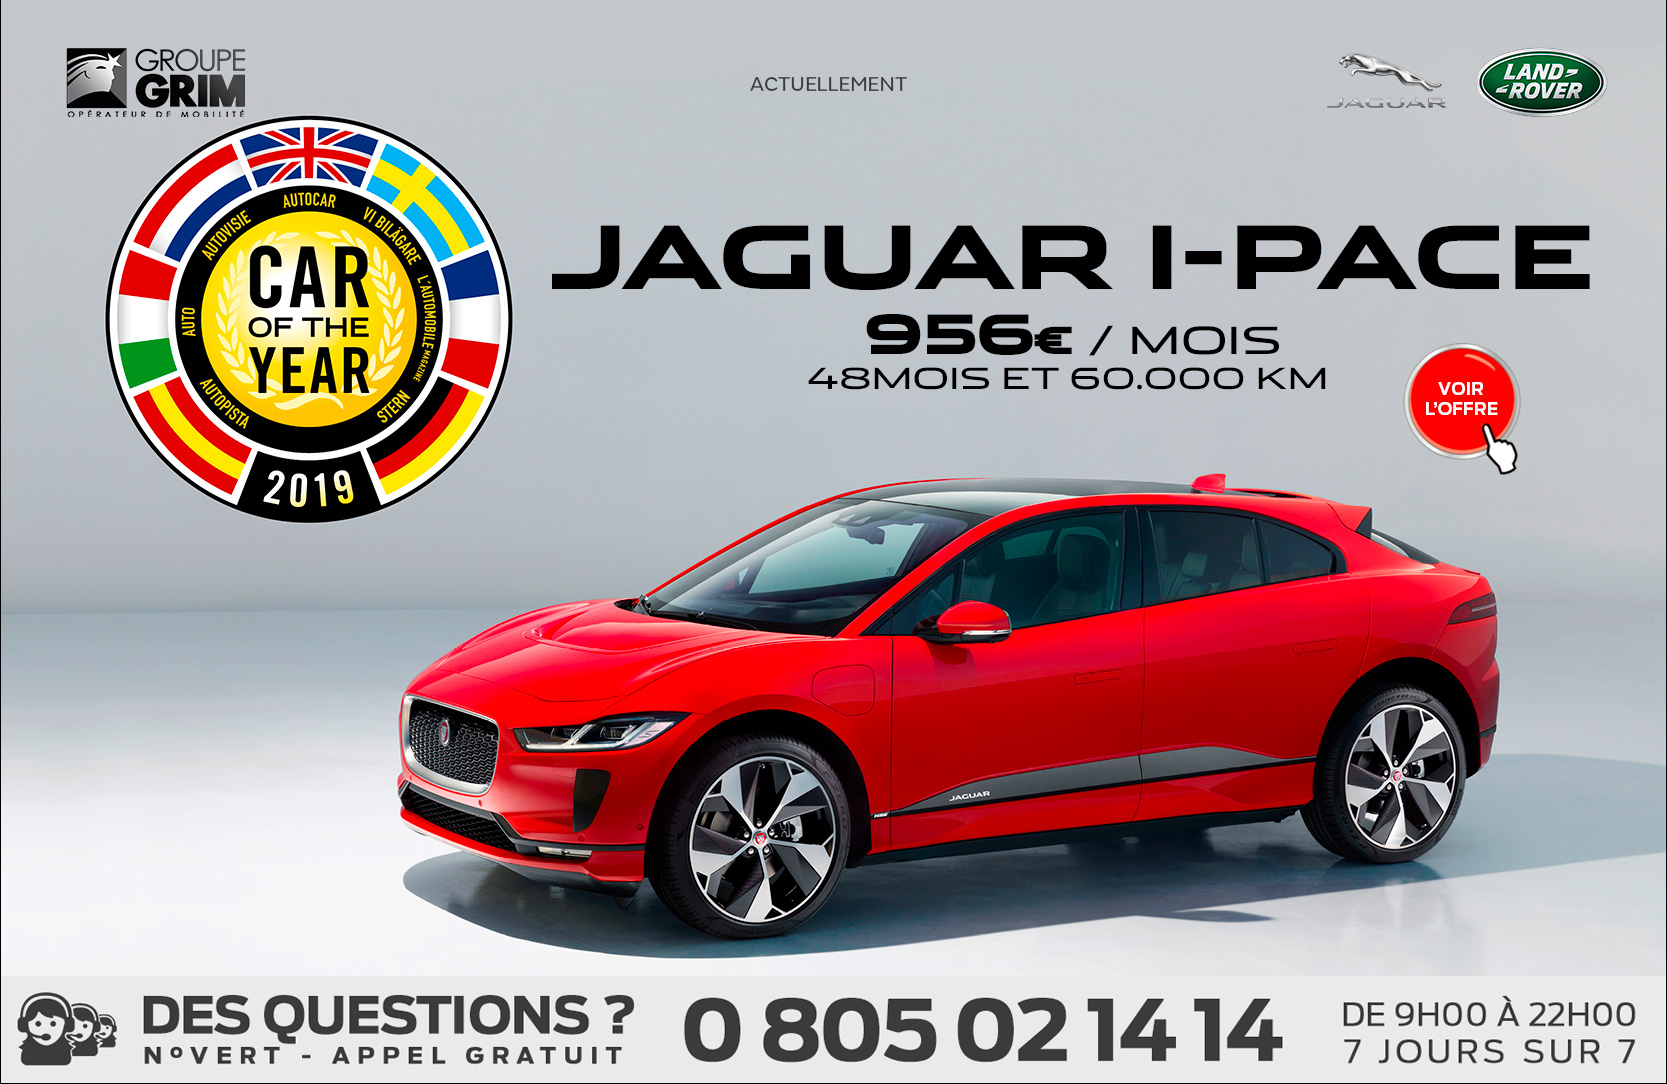 JAGUAR I-PACE A PARTIR DE 956€/MOIS 3 jaguar i pace offre